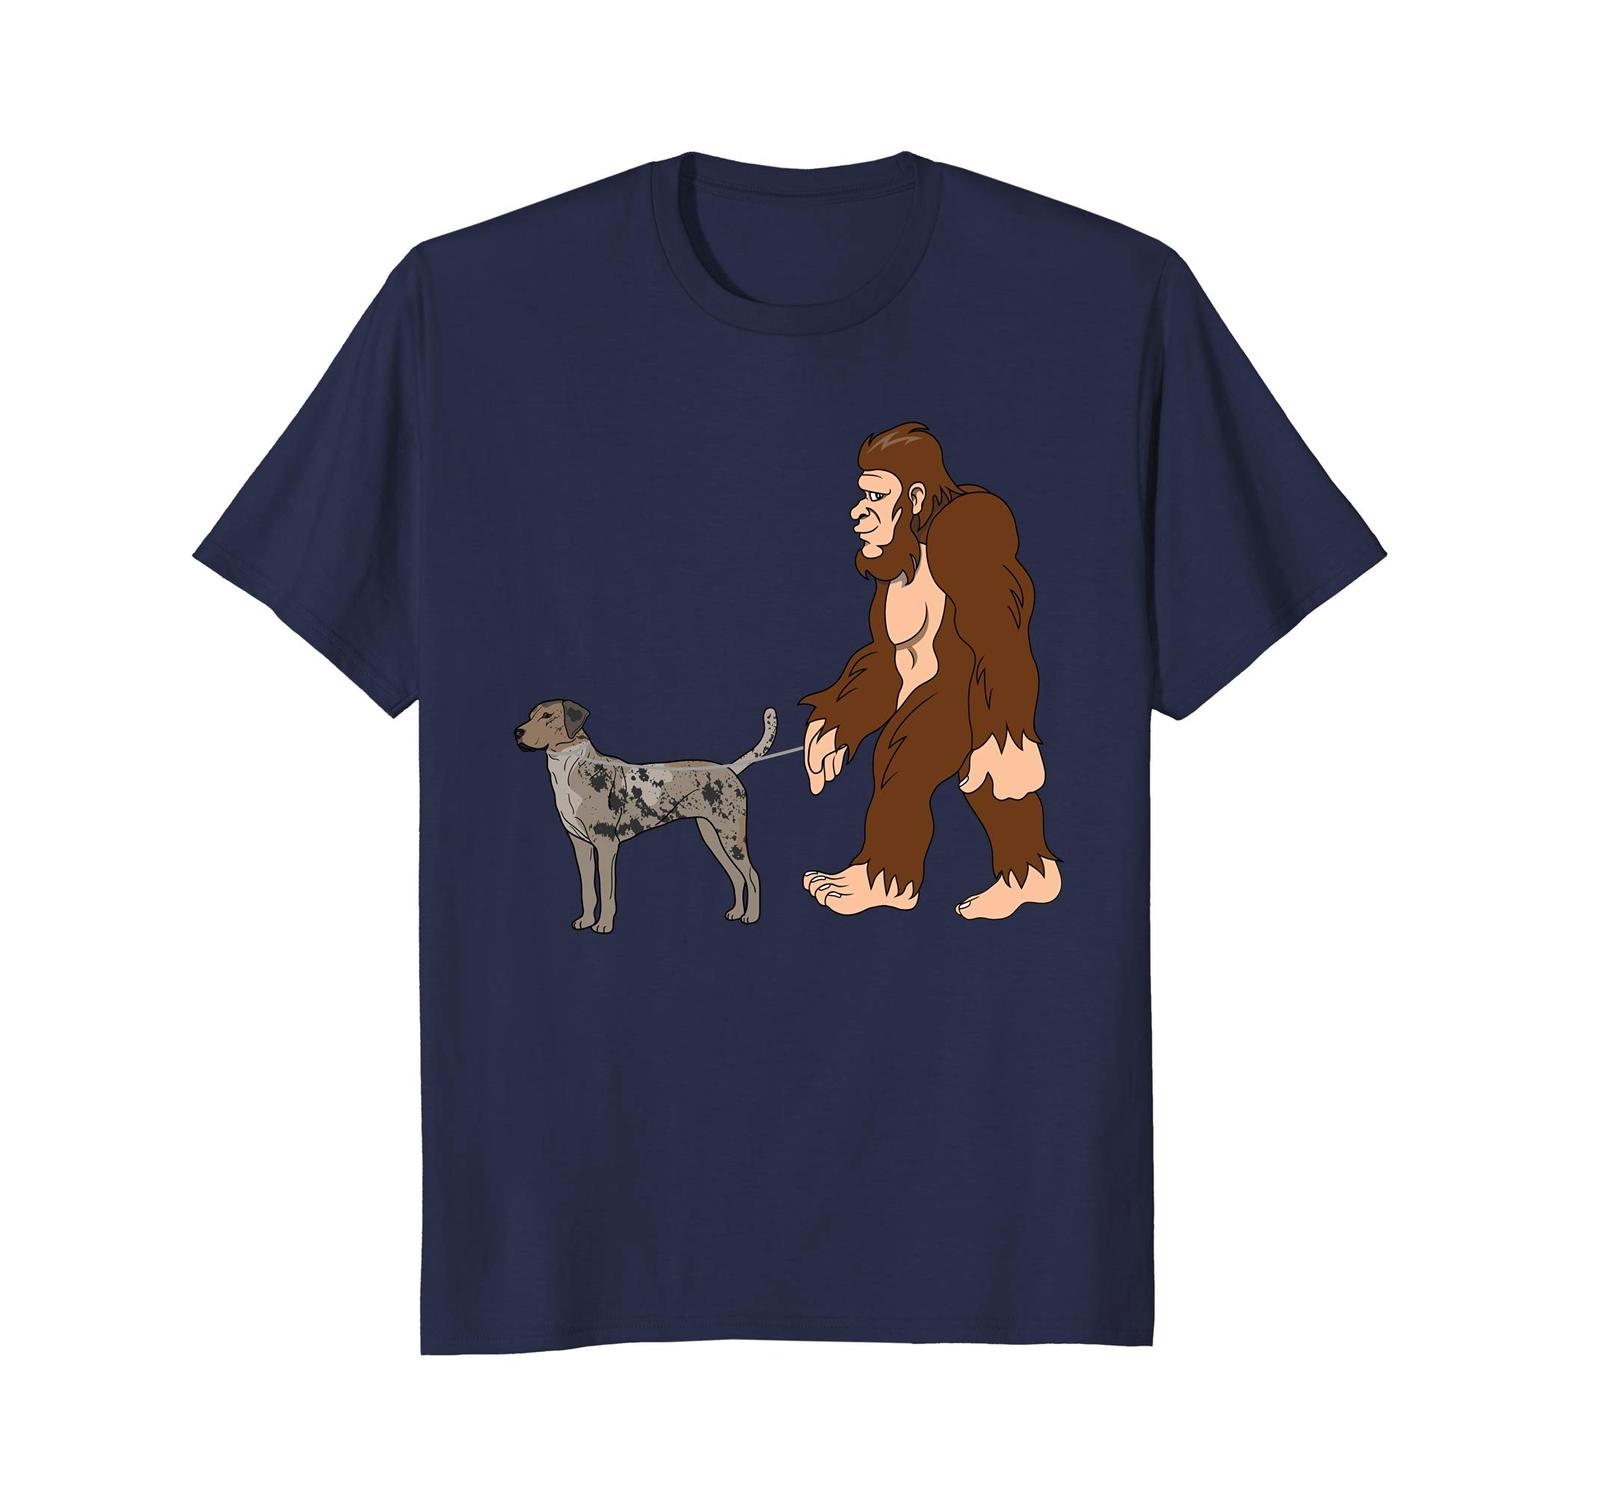 Dog Fashion - Bigfoot Walking Catahoula Leopard Dog Shirt UFO Believer Men